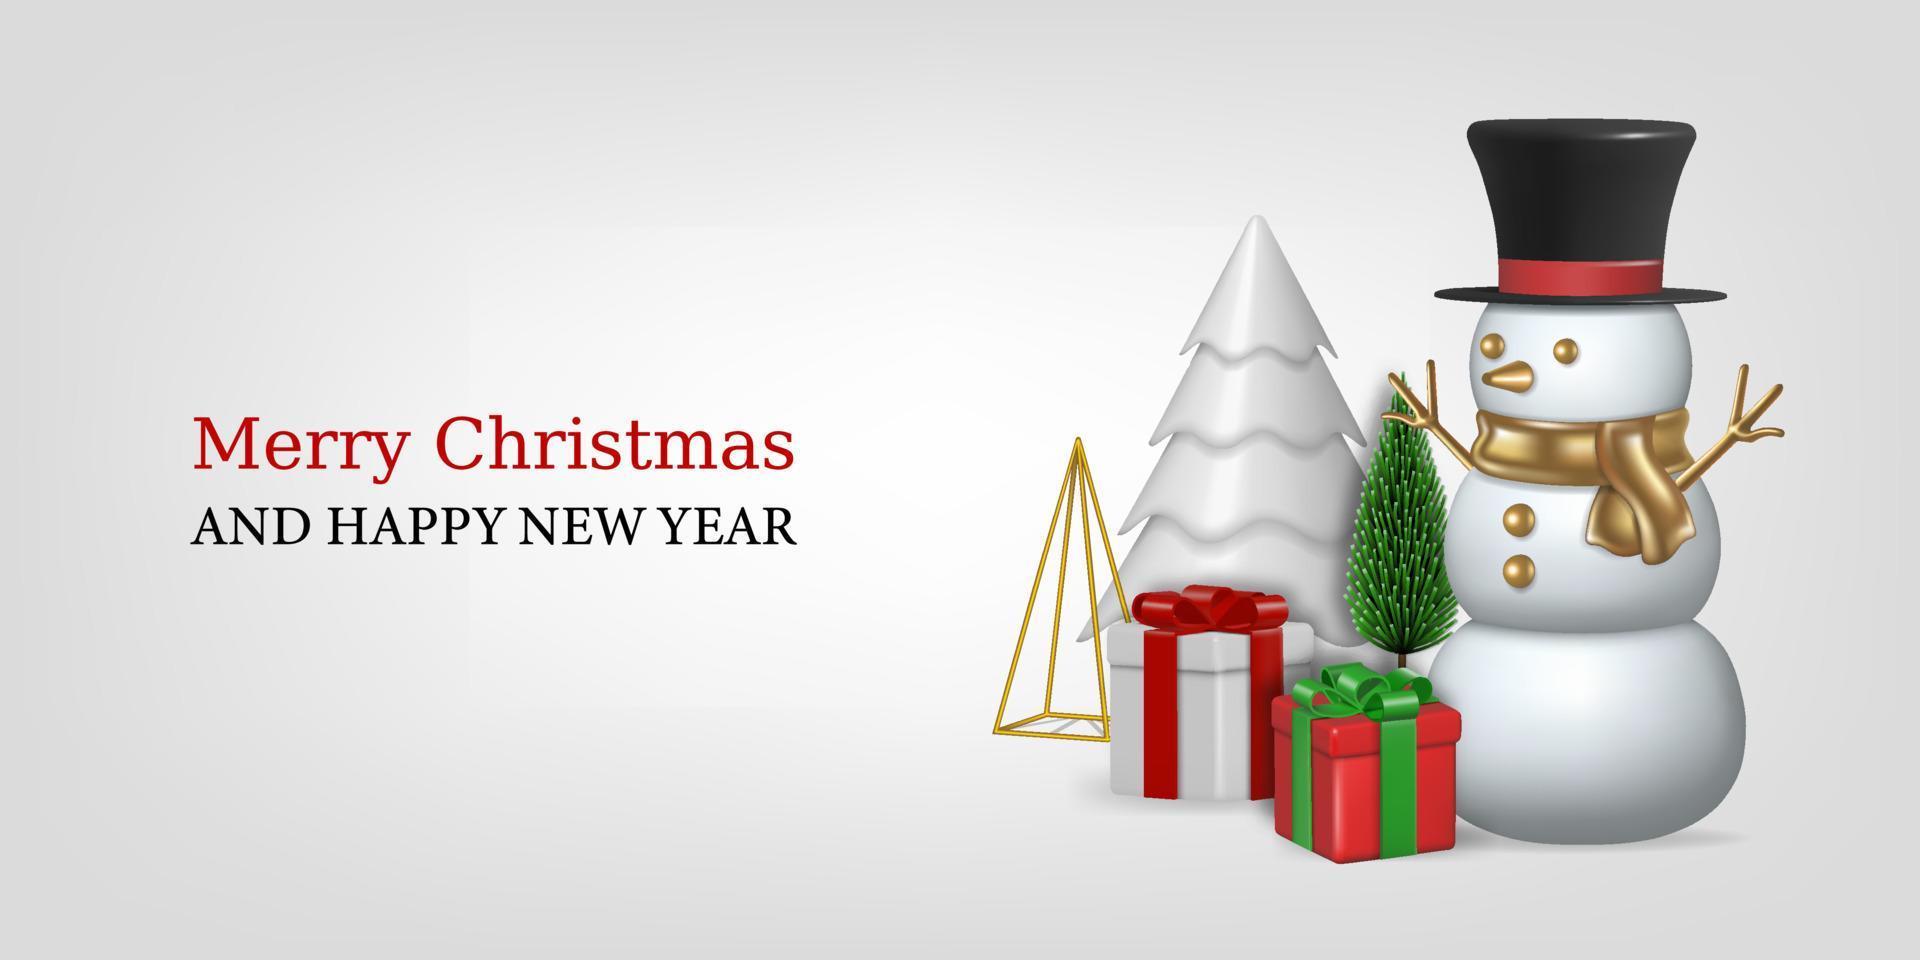 jul bakgrund med 3d element. jul baner med snögubbe, jul träd och gåva lådor vektor